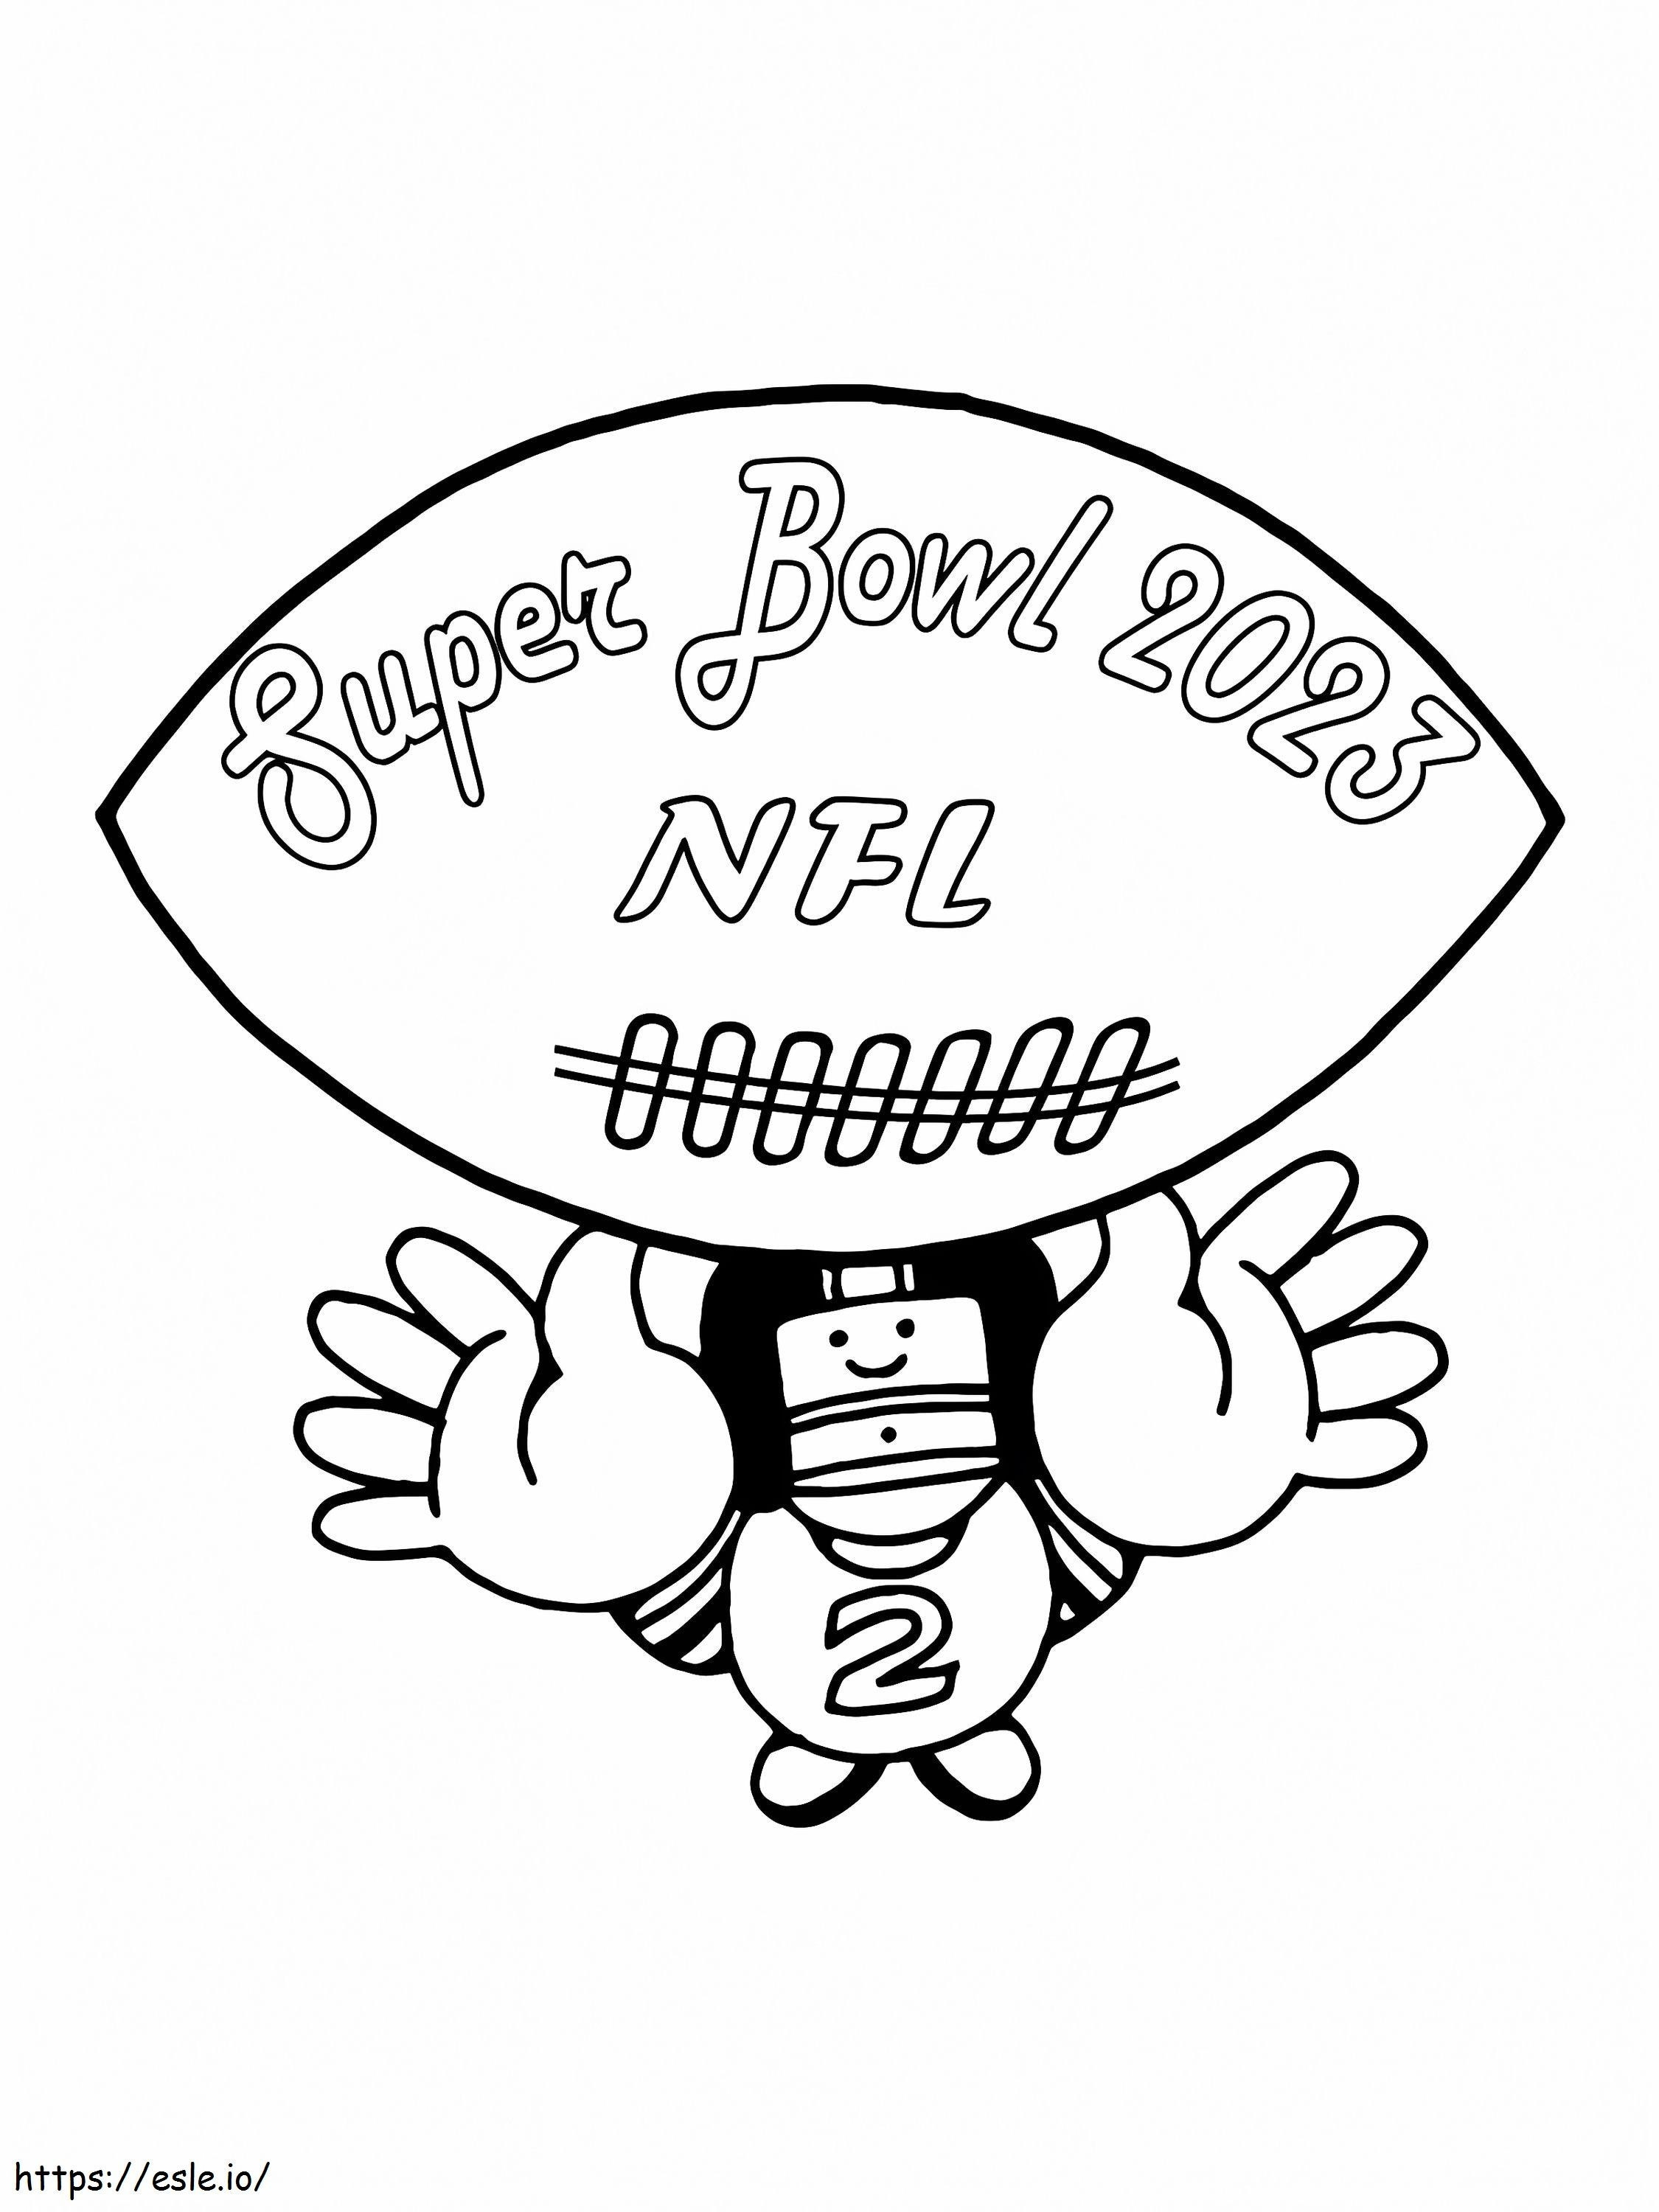 Super Bowl 2023 NFL para colorear